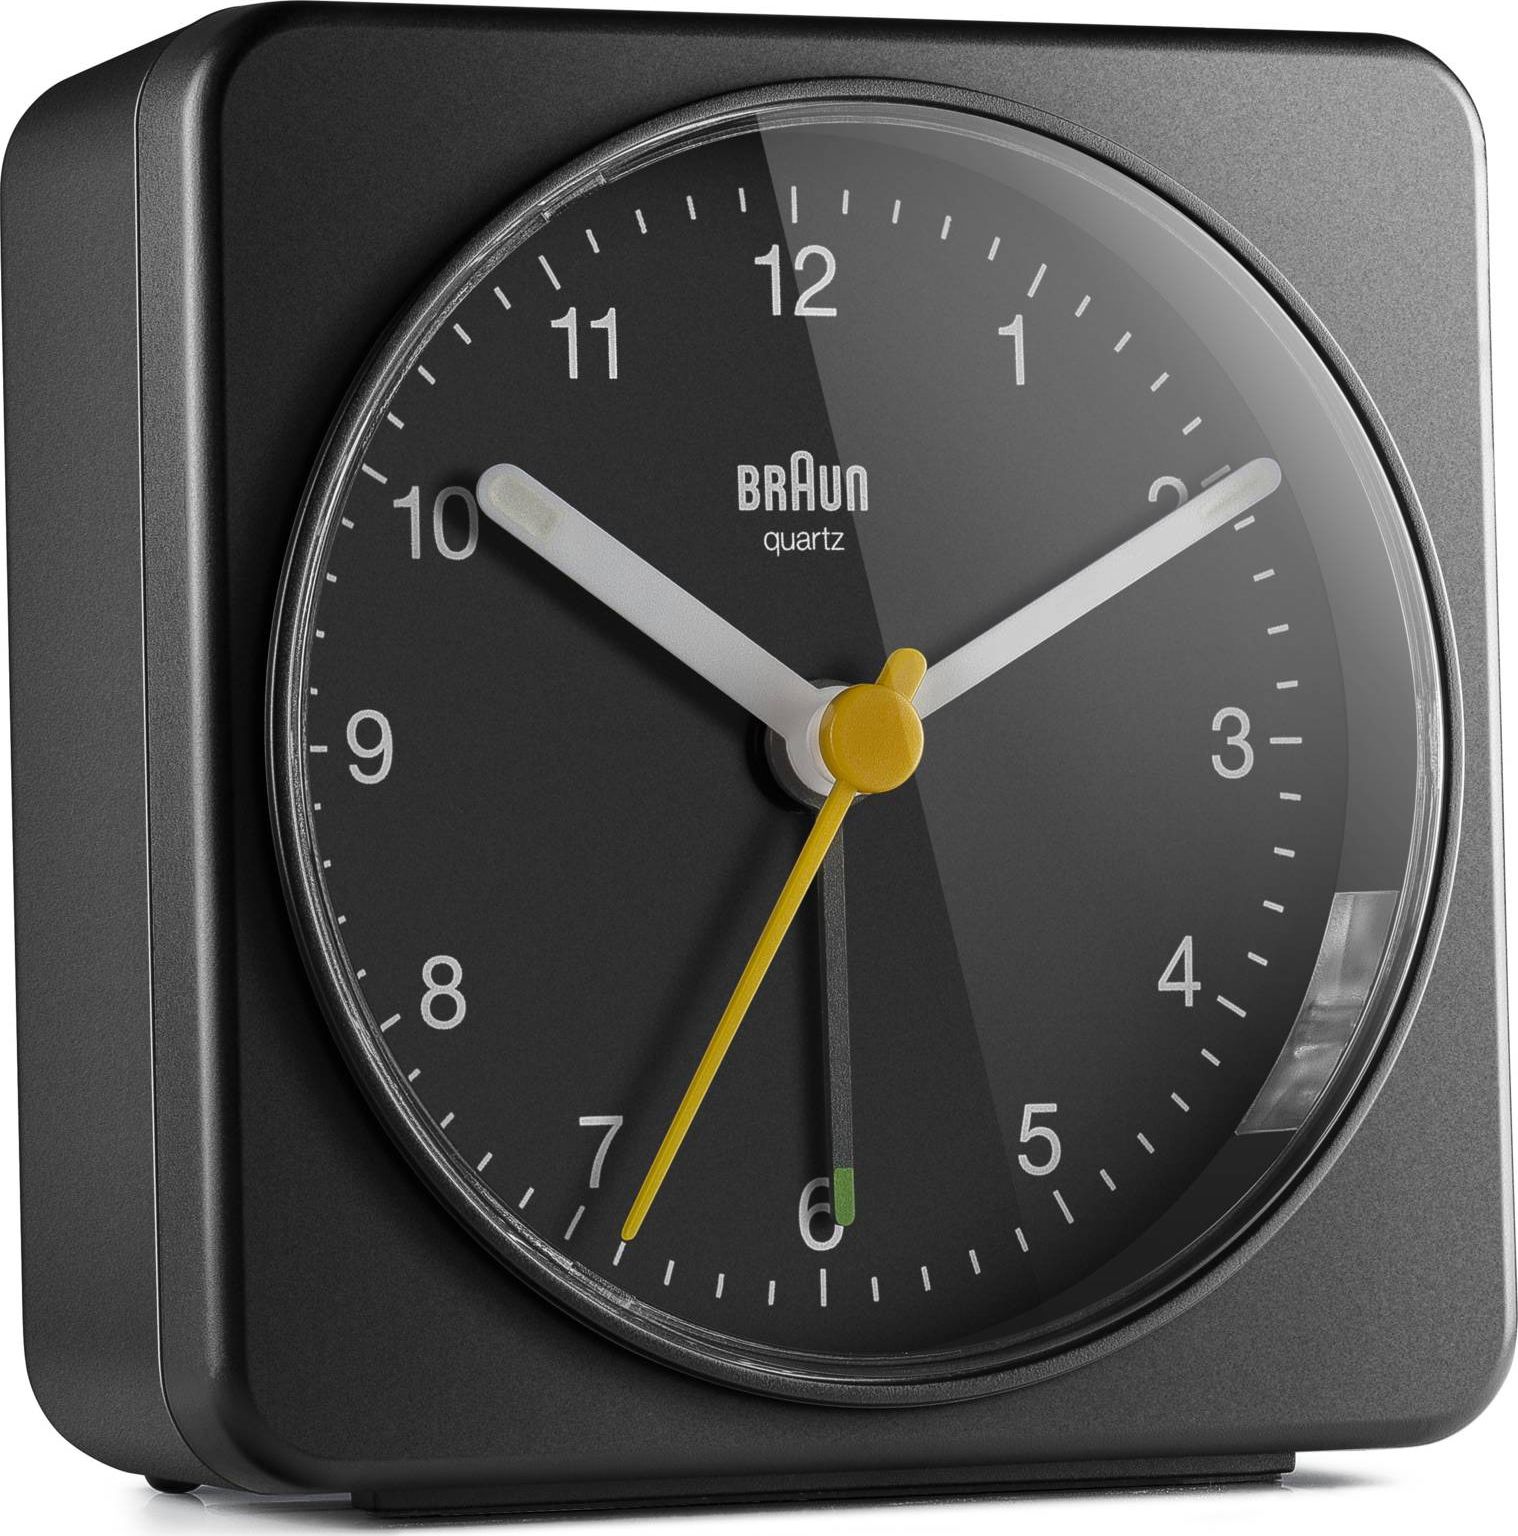 Braun BC 03 B quartz alarm clock analog black radio, radiopulksteņi